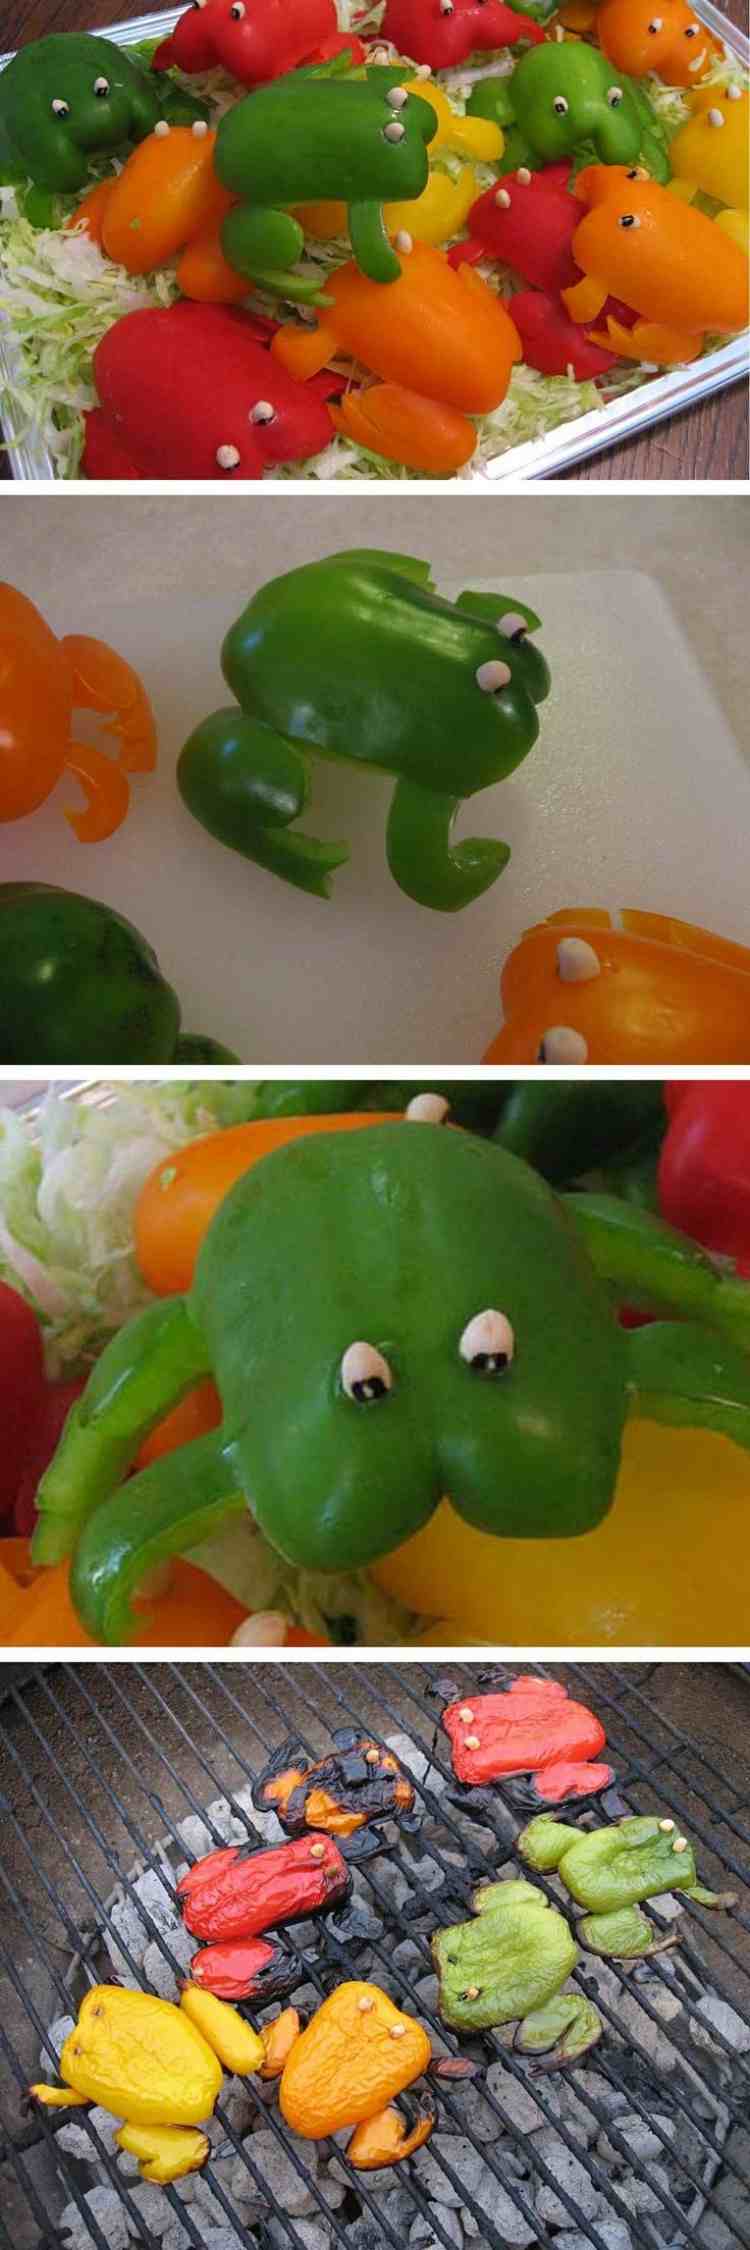 grönsak-carving-paprika-grodor-grillning